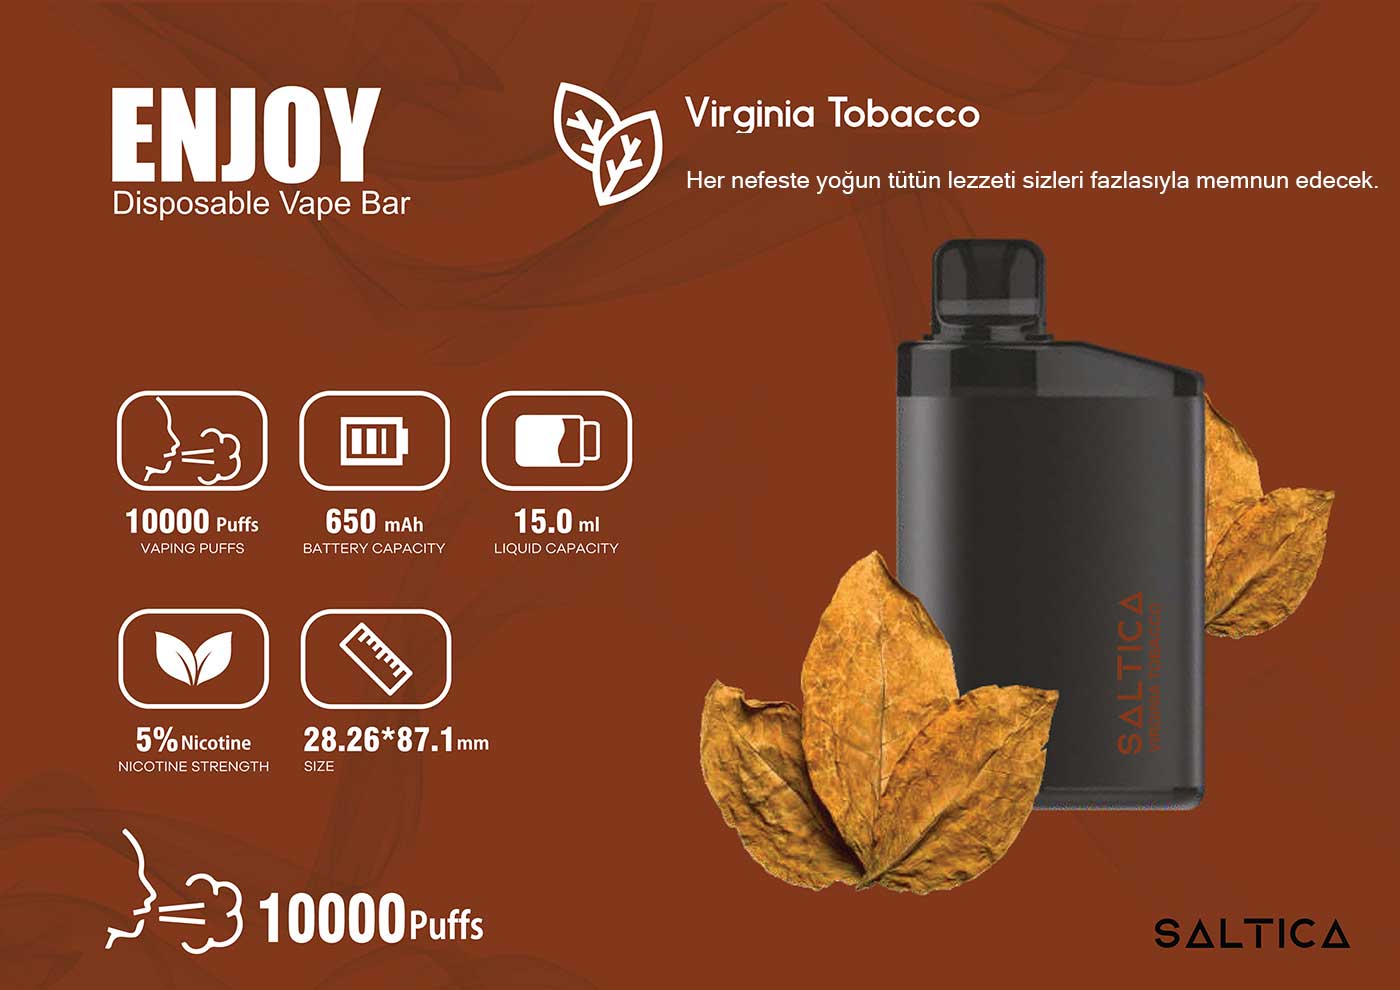 Enjoy virginia tobacco